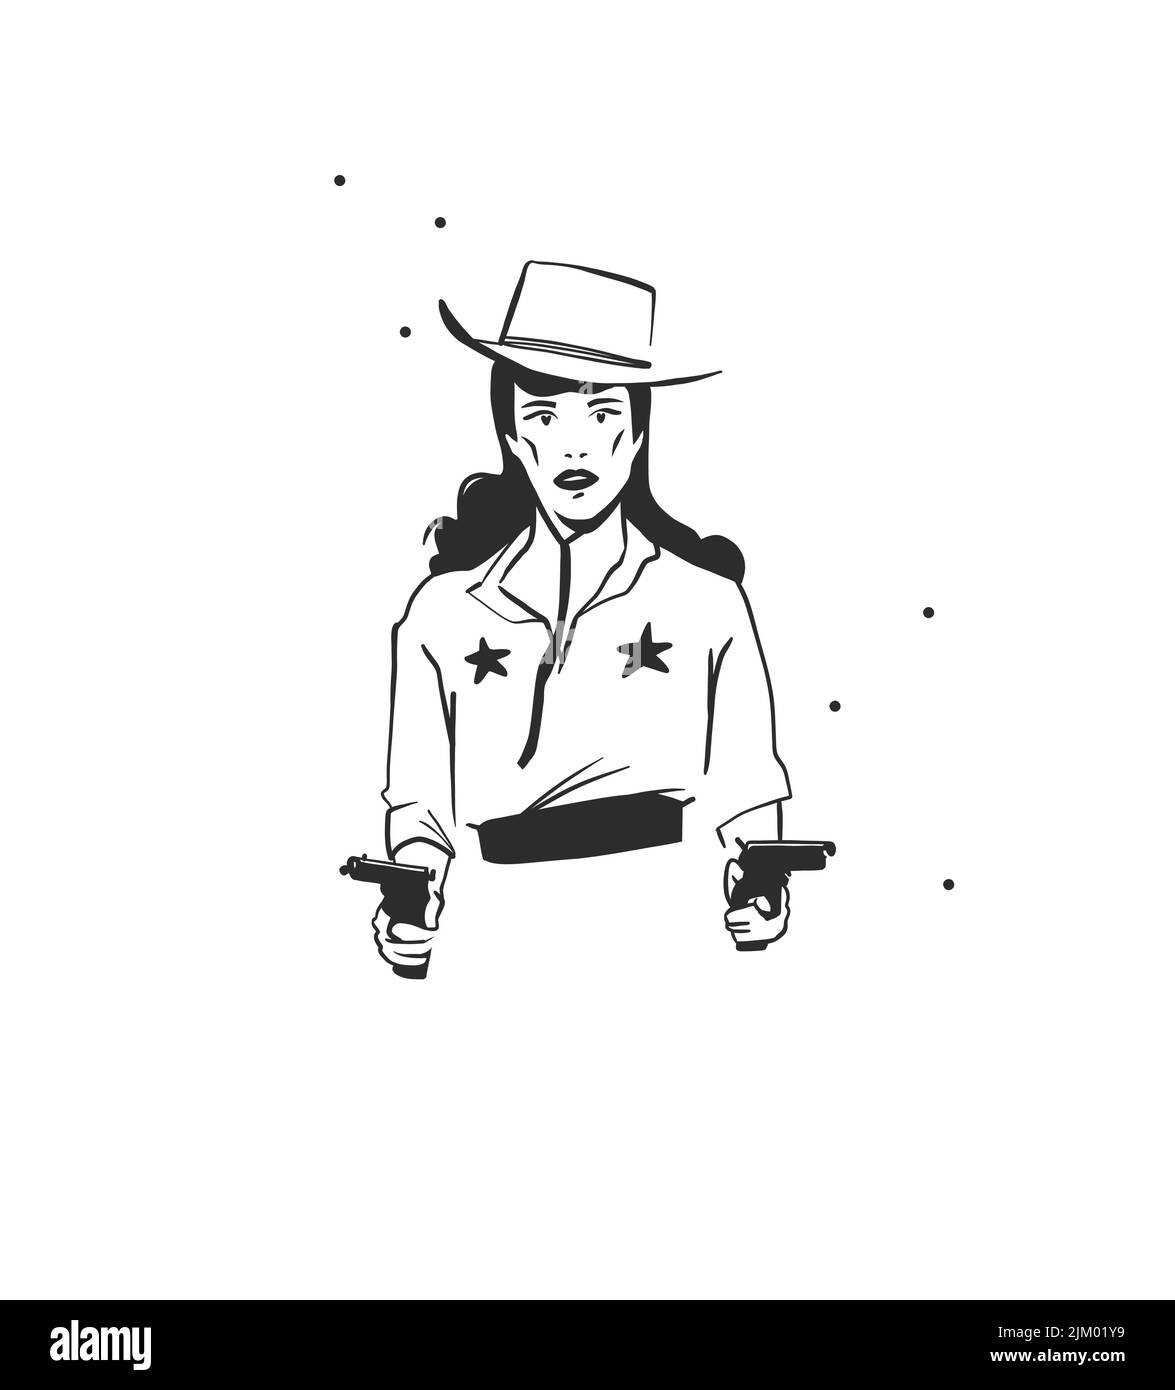 Dessin à la main vecteur graphique clipart illustration boho cowgirl en chapeau portrait avec des canons.Western design femelle.Bohemian sauvage ouest contemporain Illustration de Vecteur